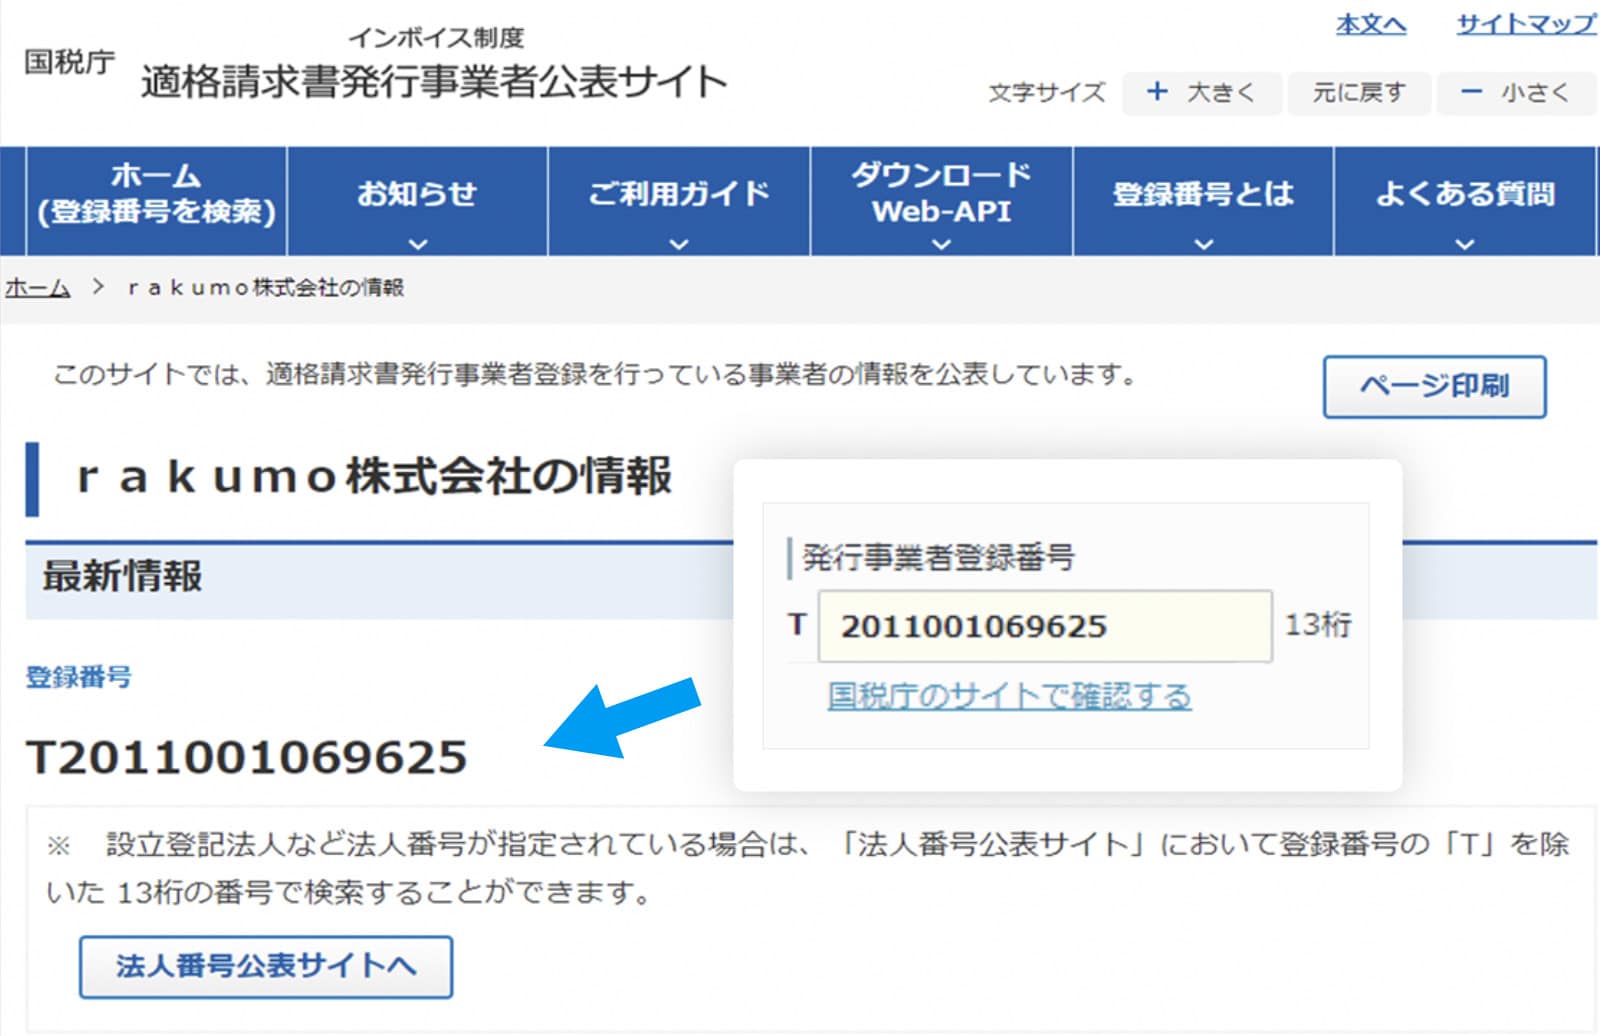 rakumo ケイヒ 「発行事業者公表サイト」の検索結果にアクセスし、入力した番号が正しいかの確認が可能